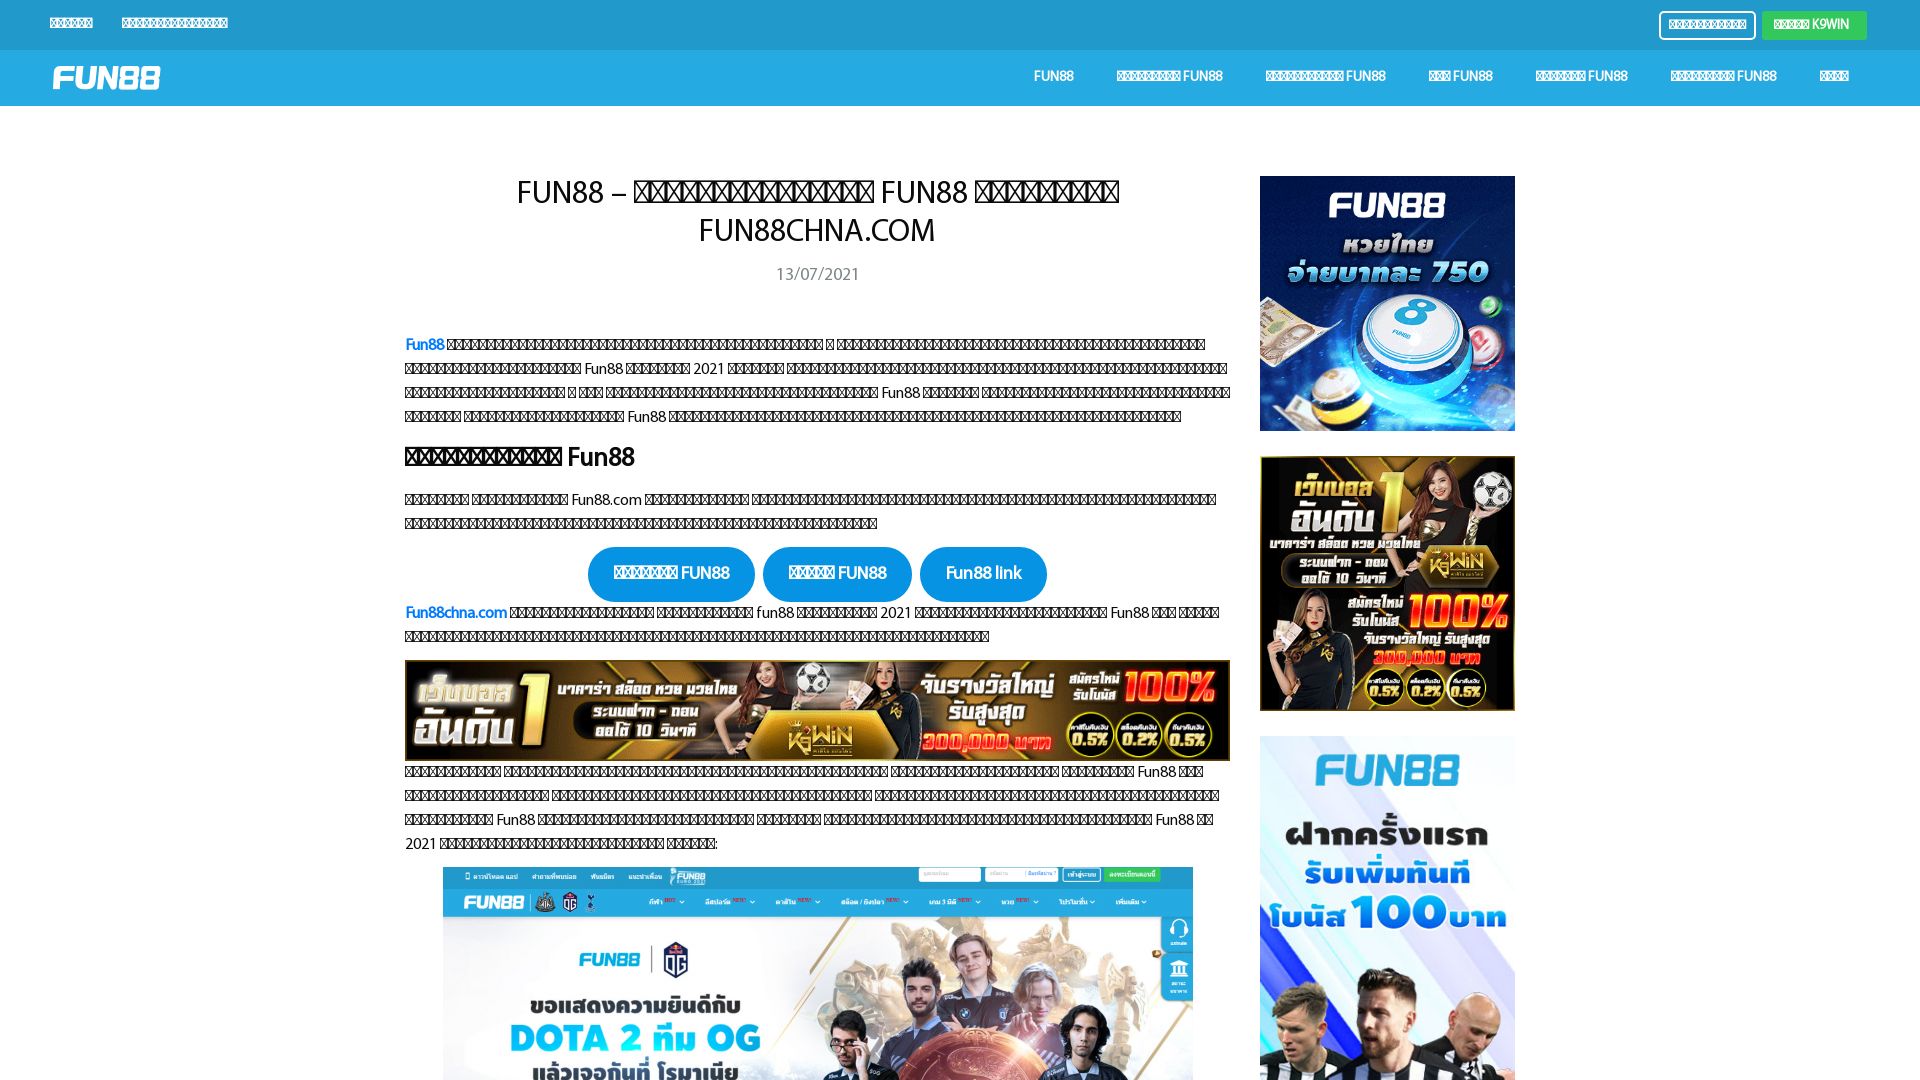 Website status fun88chna.com is   ONLINE